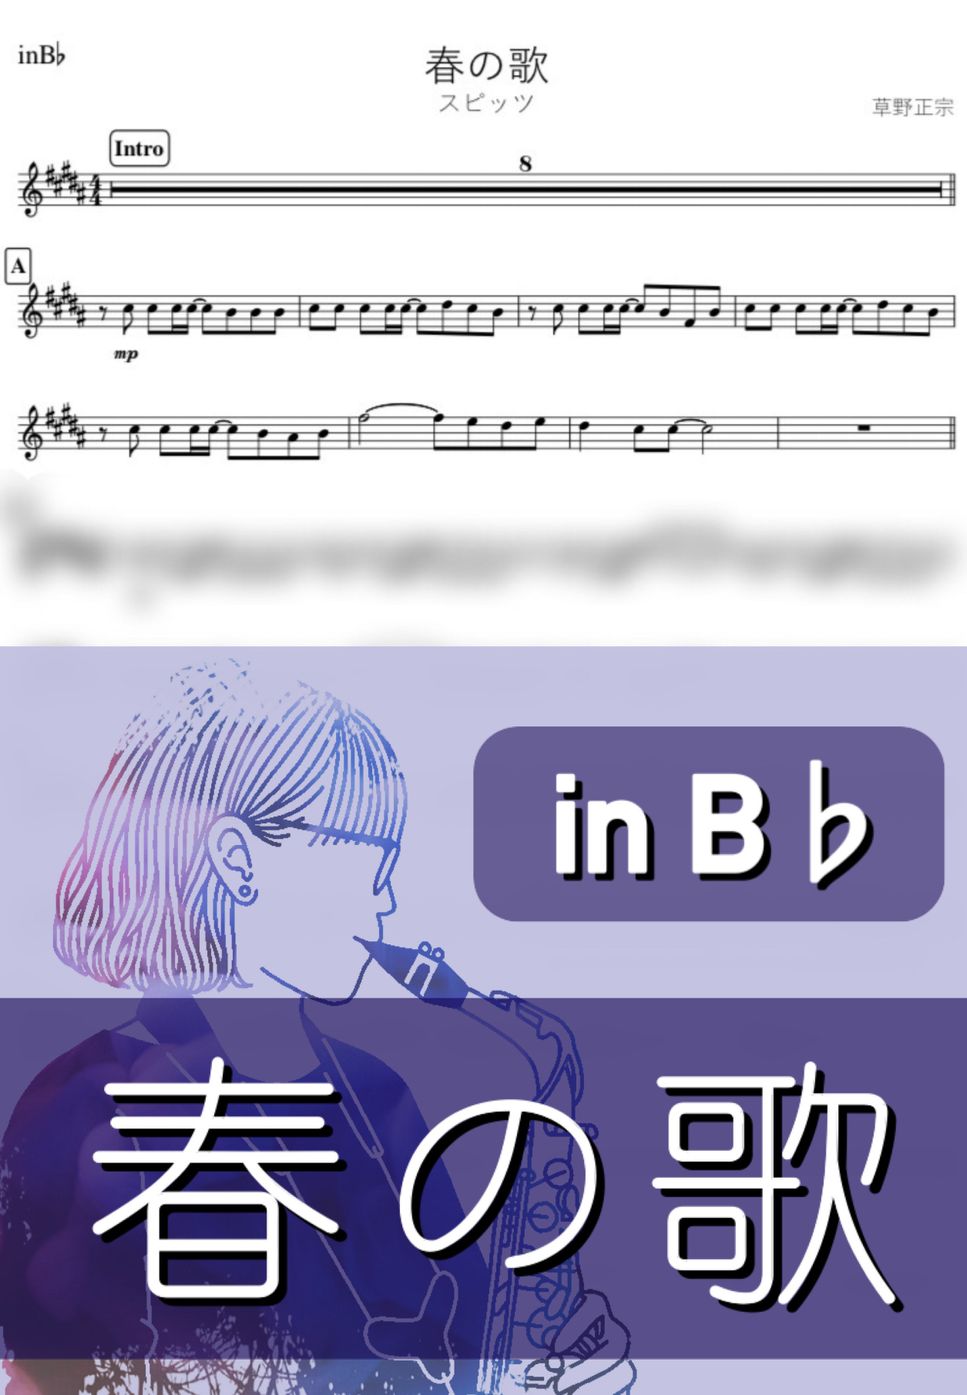 スピッツ - 春の歌 (B♭) by kanamusic